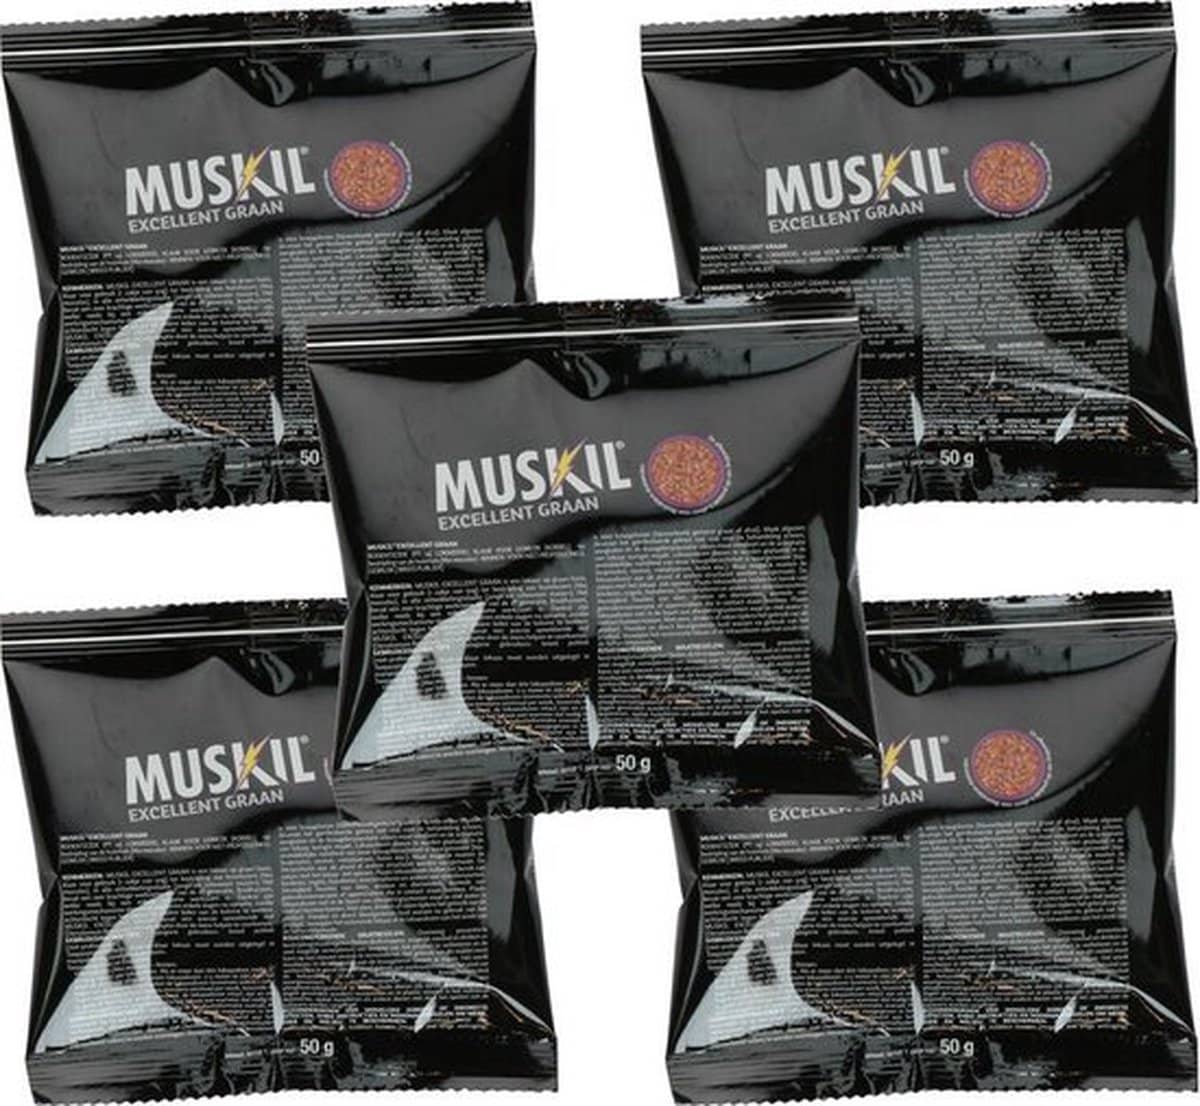 Muskil muizengif korrels voor binnen en buiten – 5 zakjes. Voor binnen en buiten